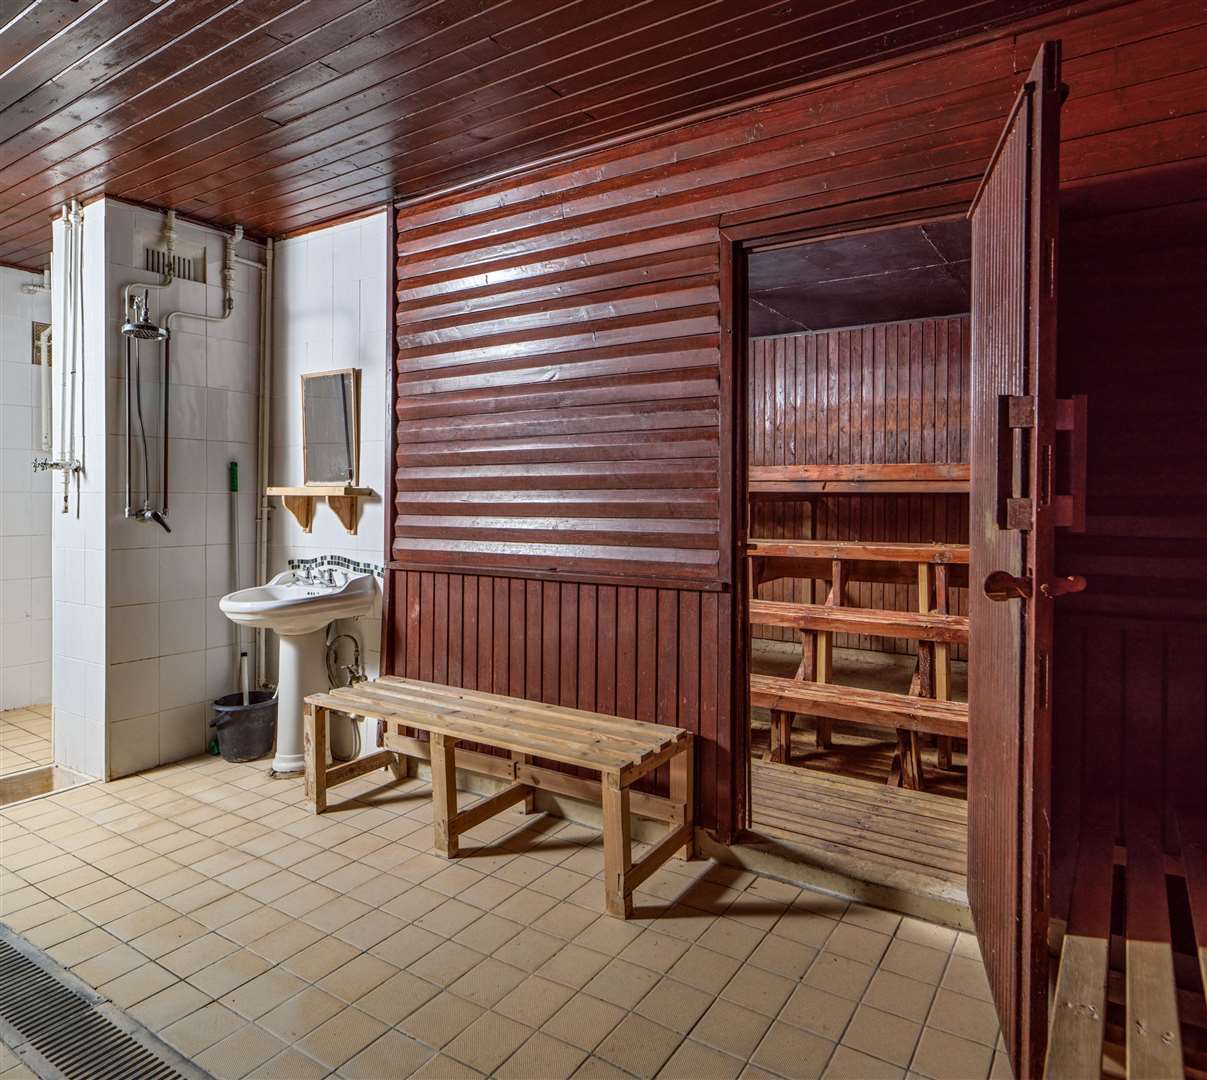 Inside the sauna